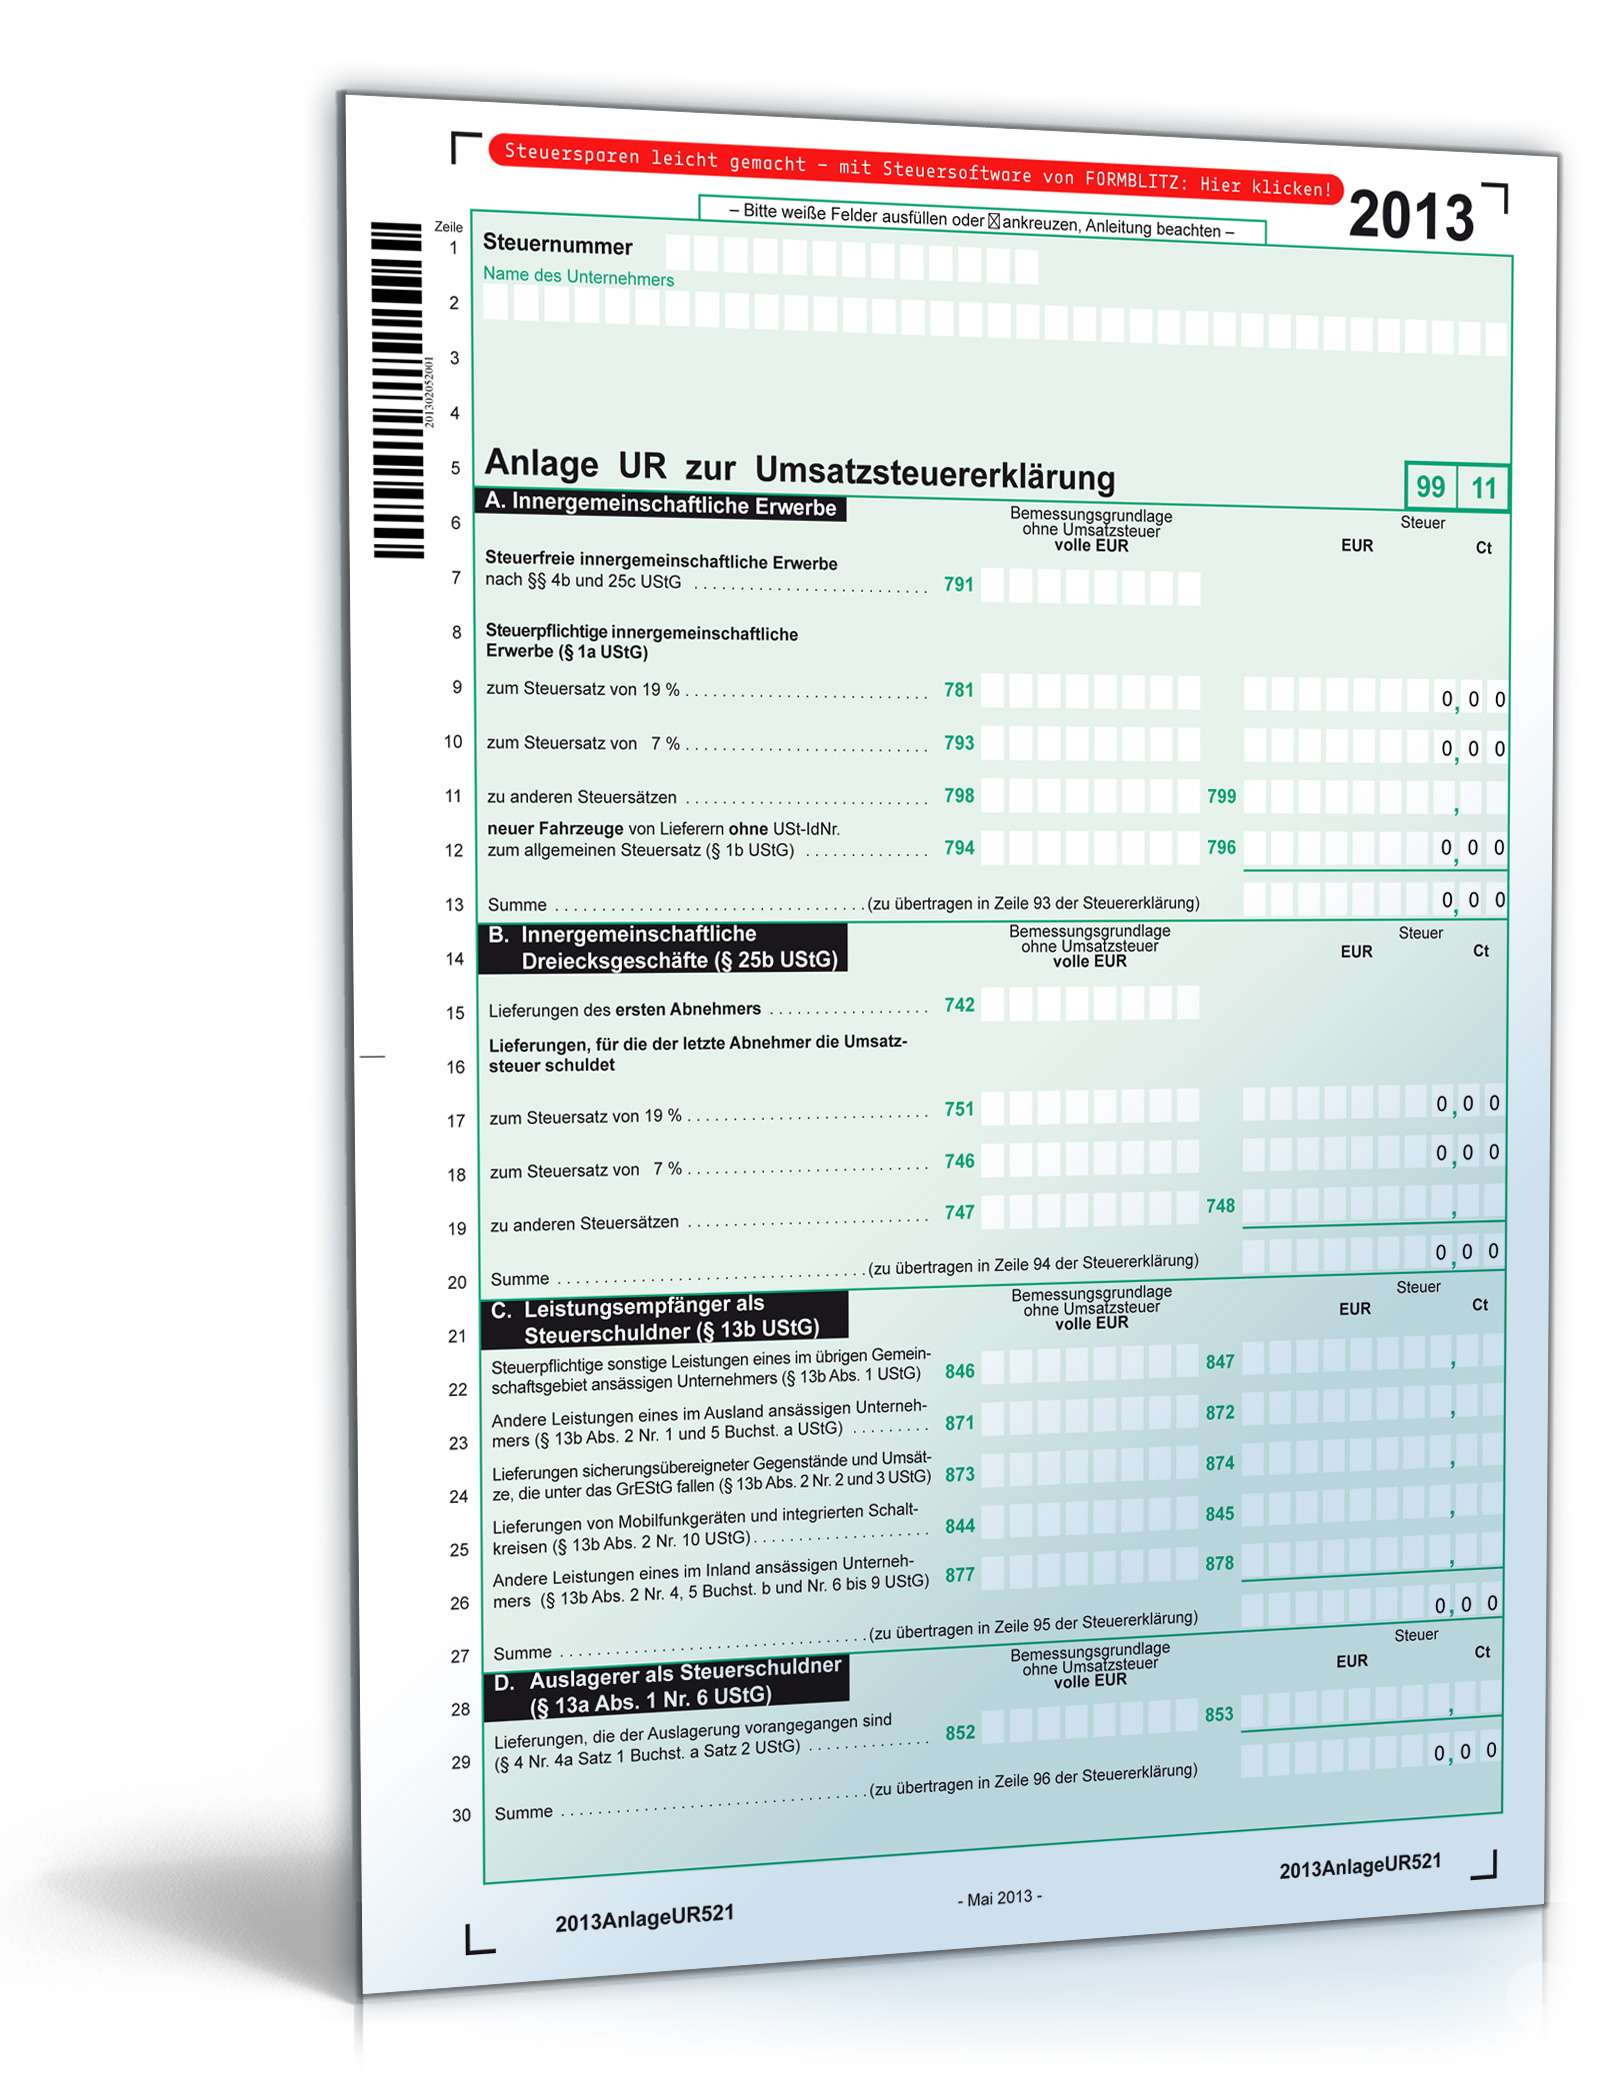 Hauptbild des Produkts: Anlage UR zur Umsatzsteuererklärung 2013